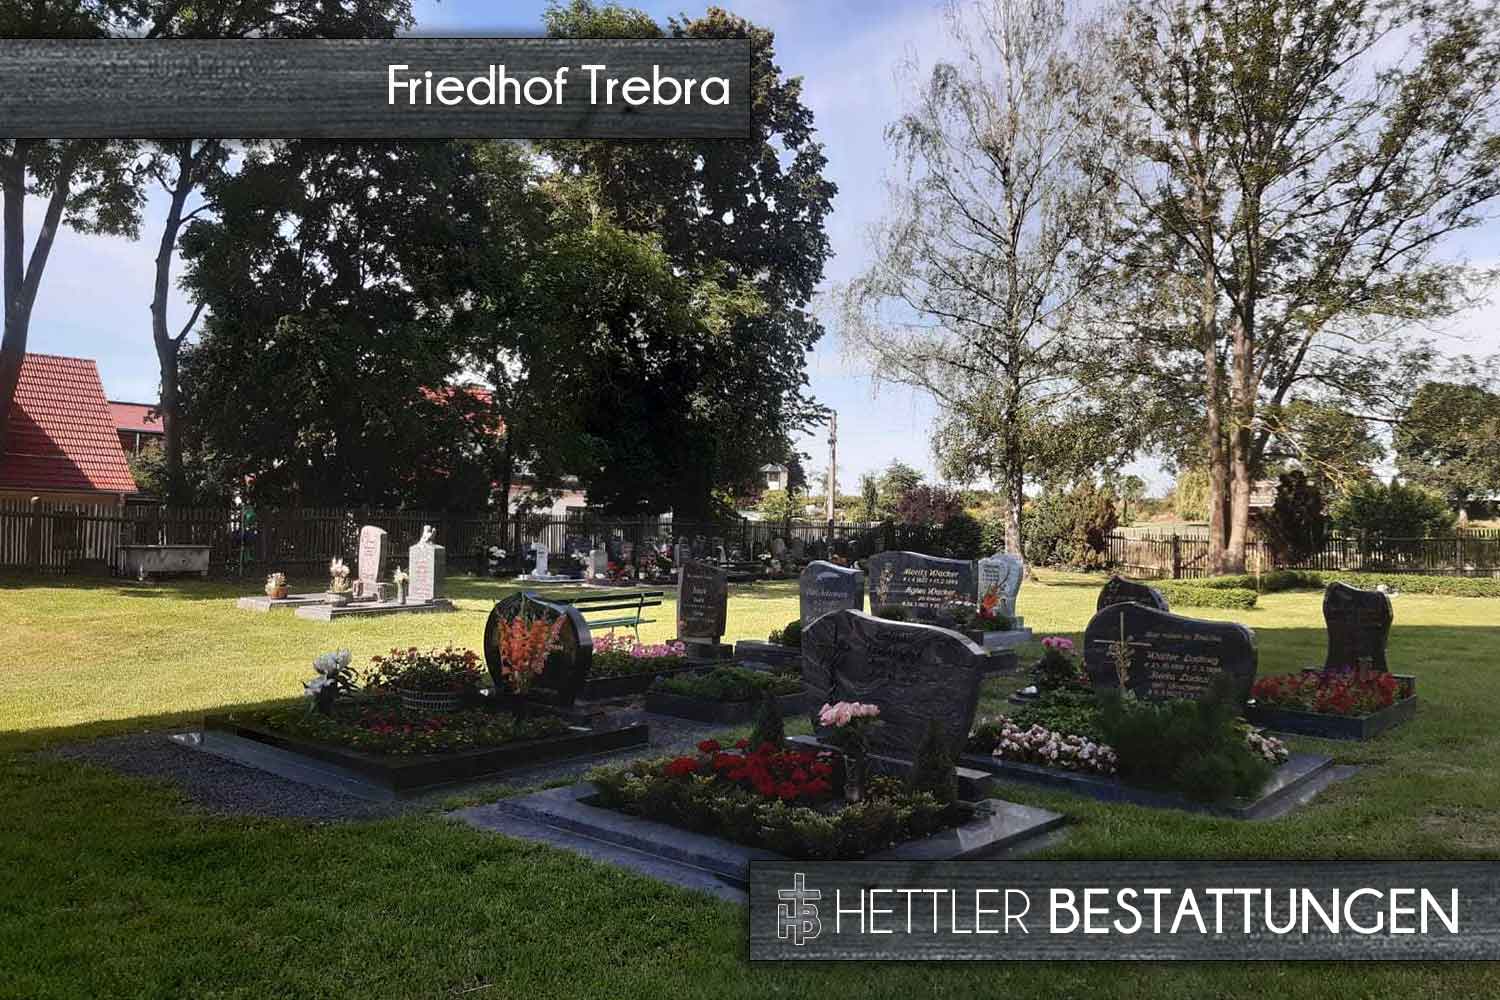 Friedhof in Trebra. Ihr Ort des Abschieds mit Hettler Bestattungen.